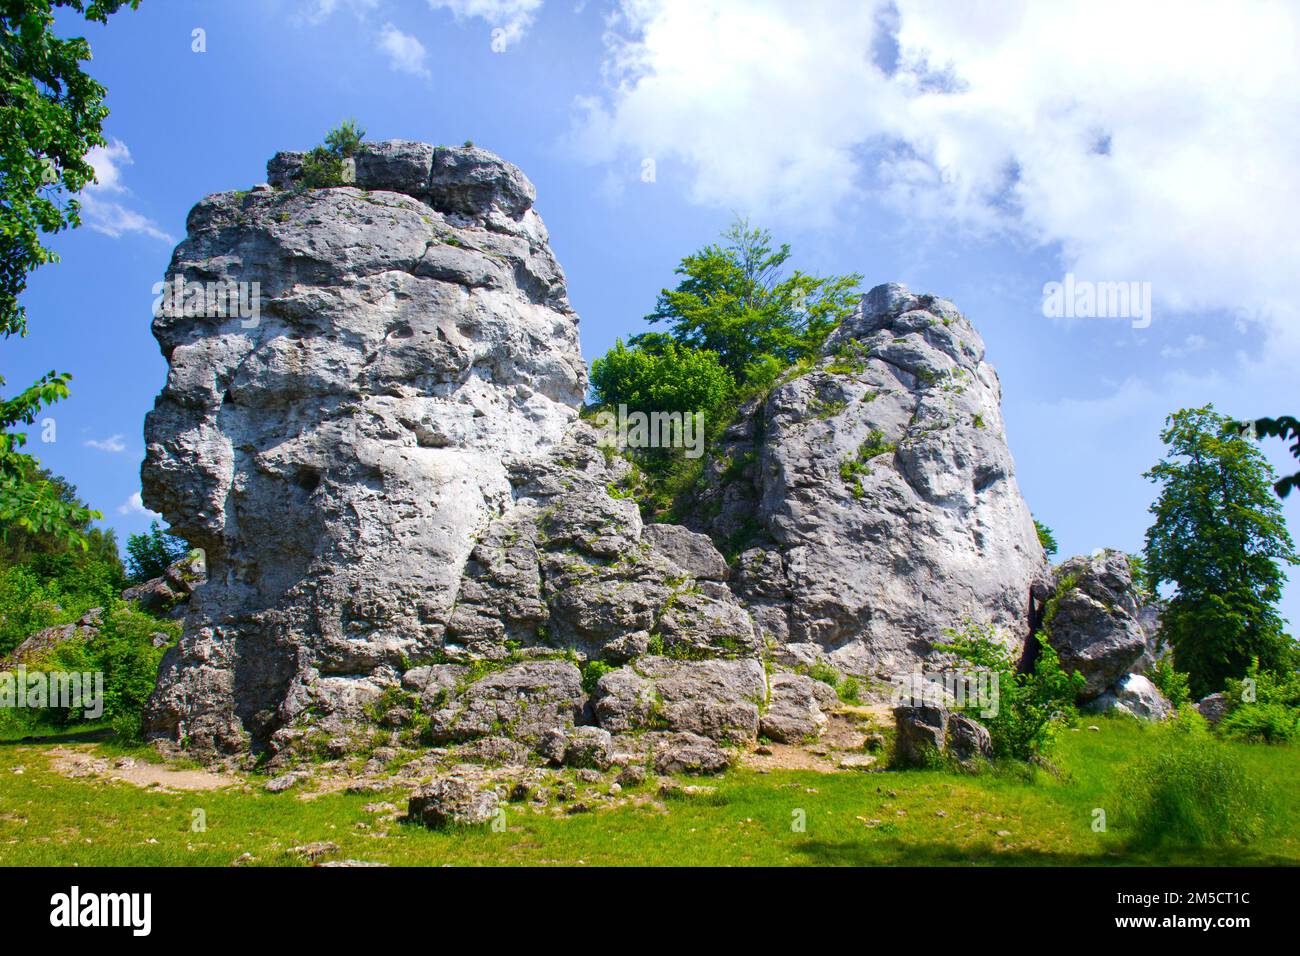 Limestone rock formation called Mlynarz at peak of Gora Zborow, Podlesice, Poland Stock Photo